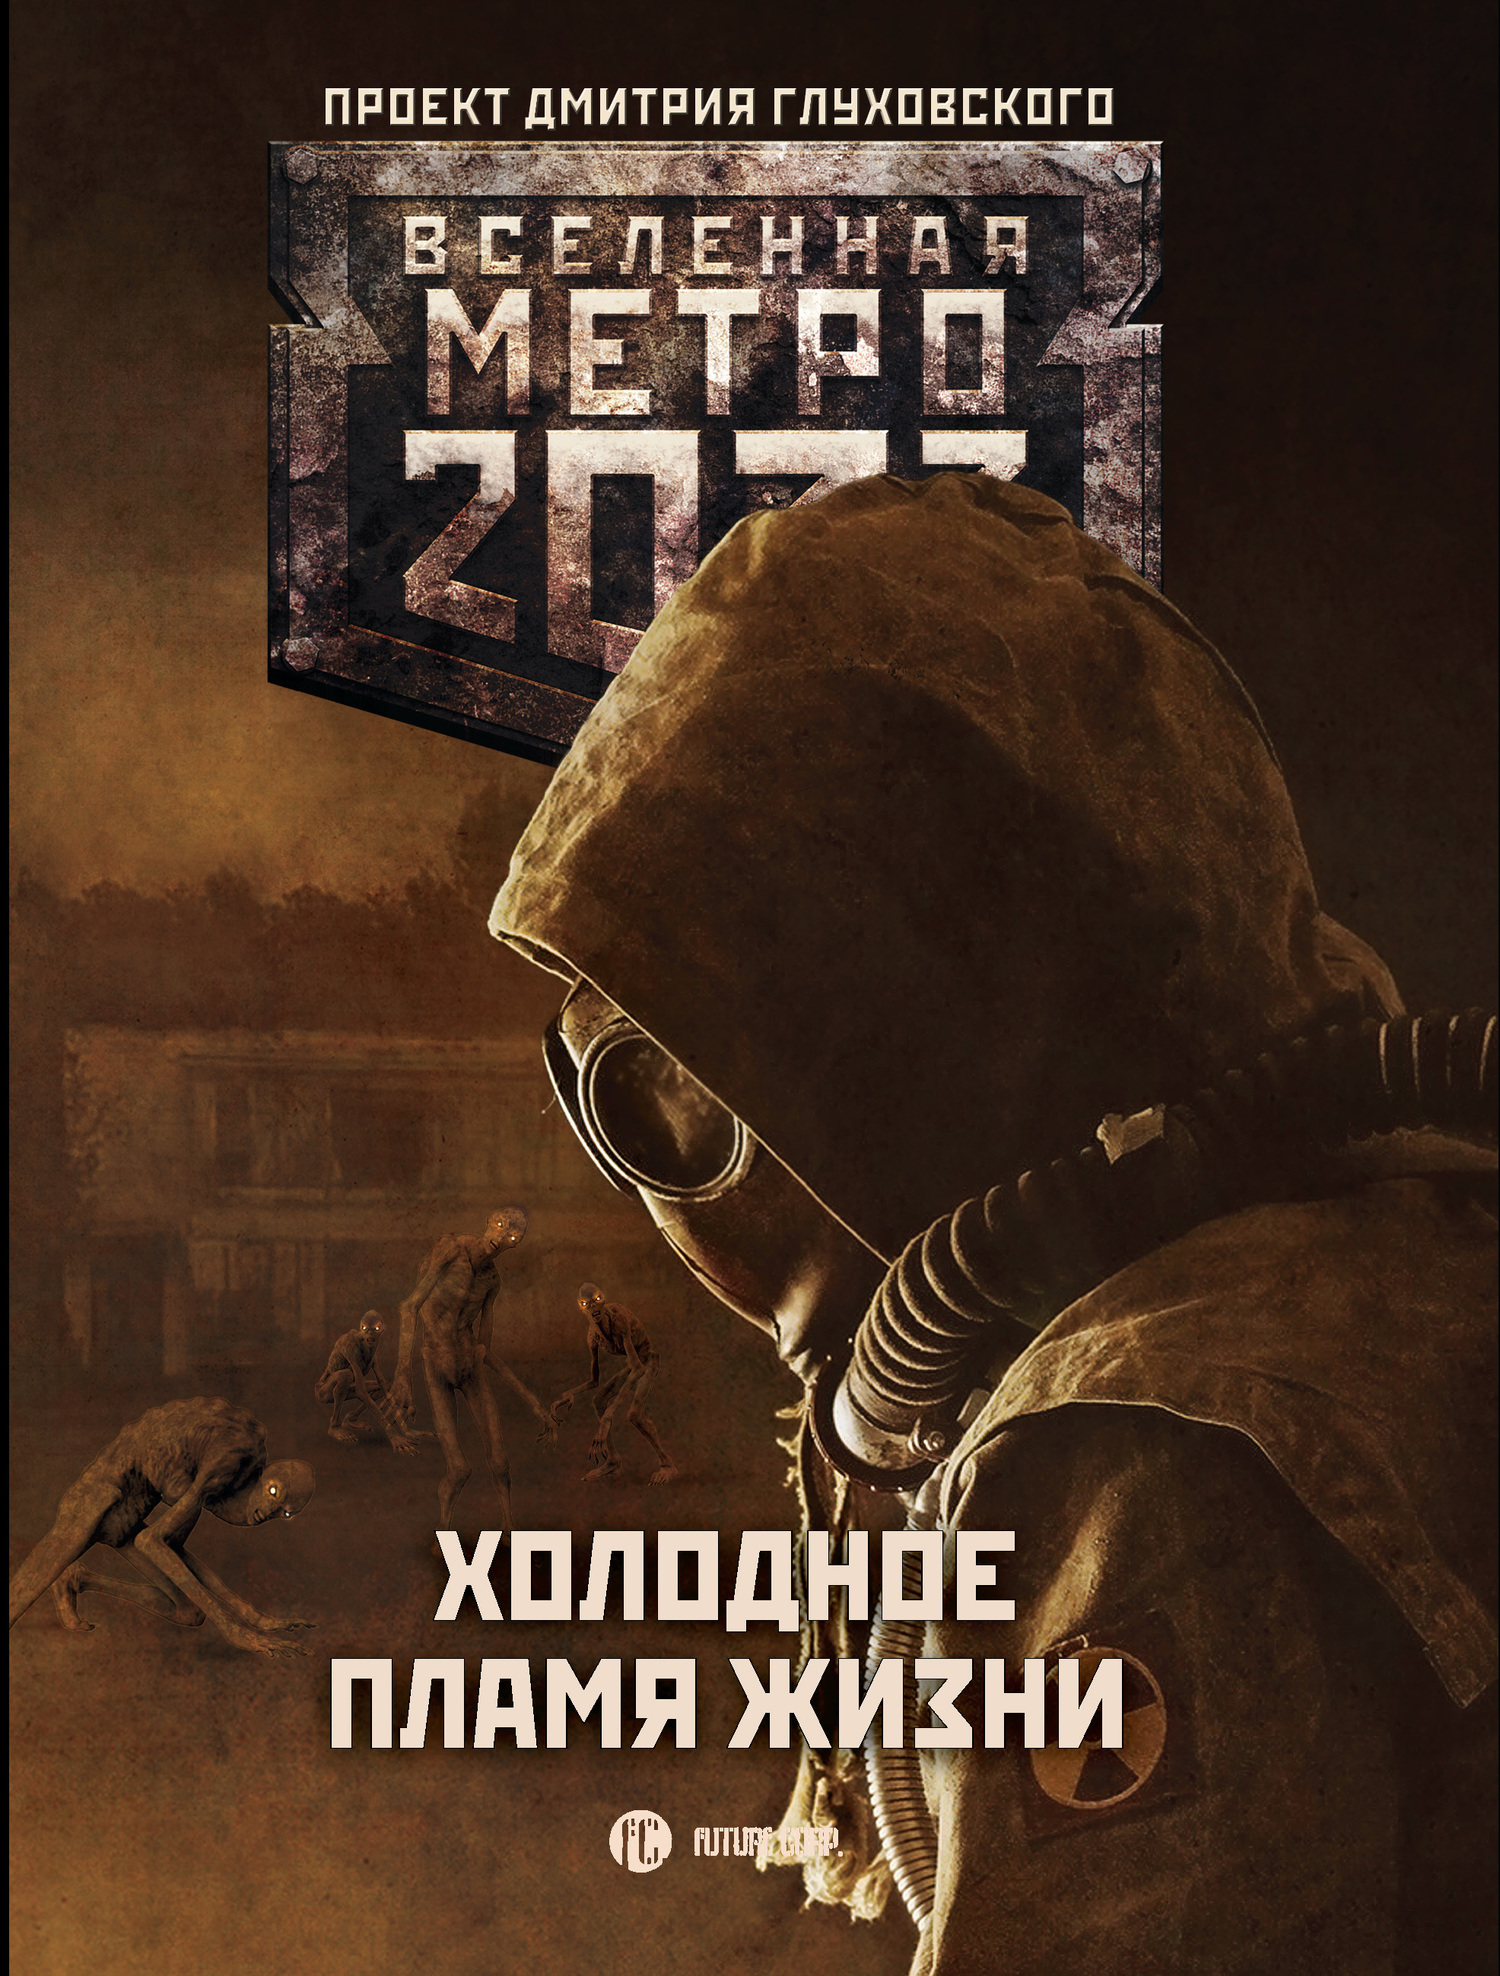 Старовойтов Павел - Метро 2033: Холодное пламя жизни (сборник) скачать бесплатно